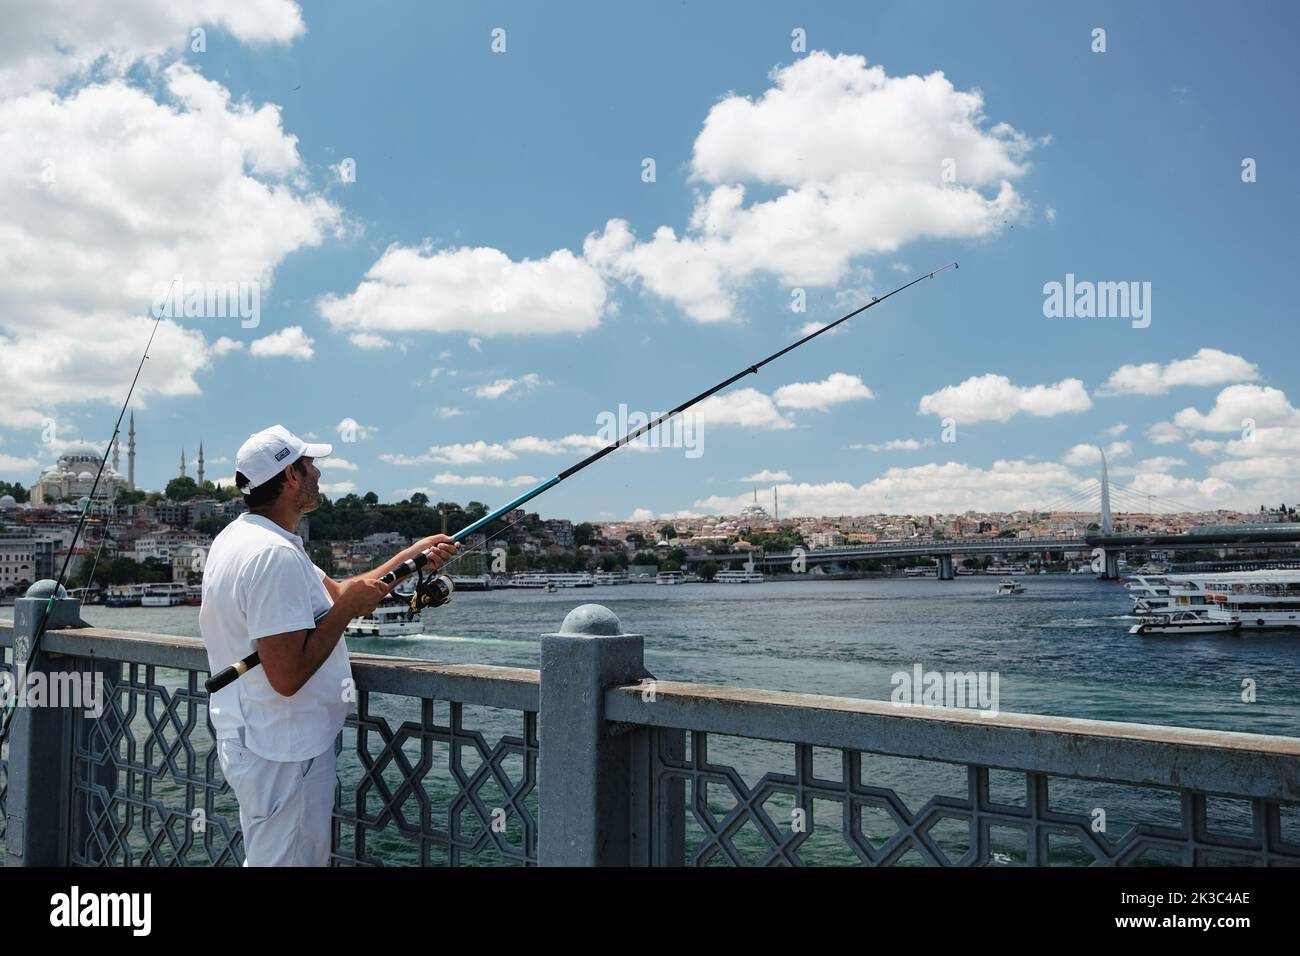 Pescatore grandangolare sul ponte Eminönü Galata, clima nuvoloso, uomo di mezza età in bianco, Turchia Istanbul concetto di turismo, hobby e tempo libero Foto Stock